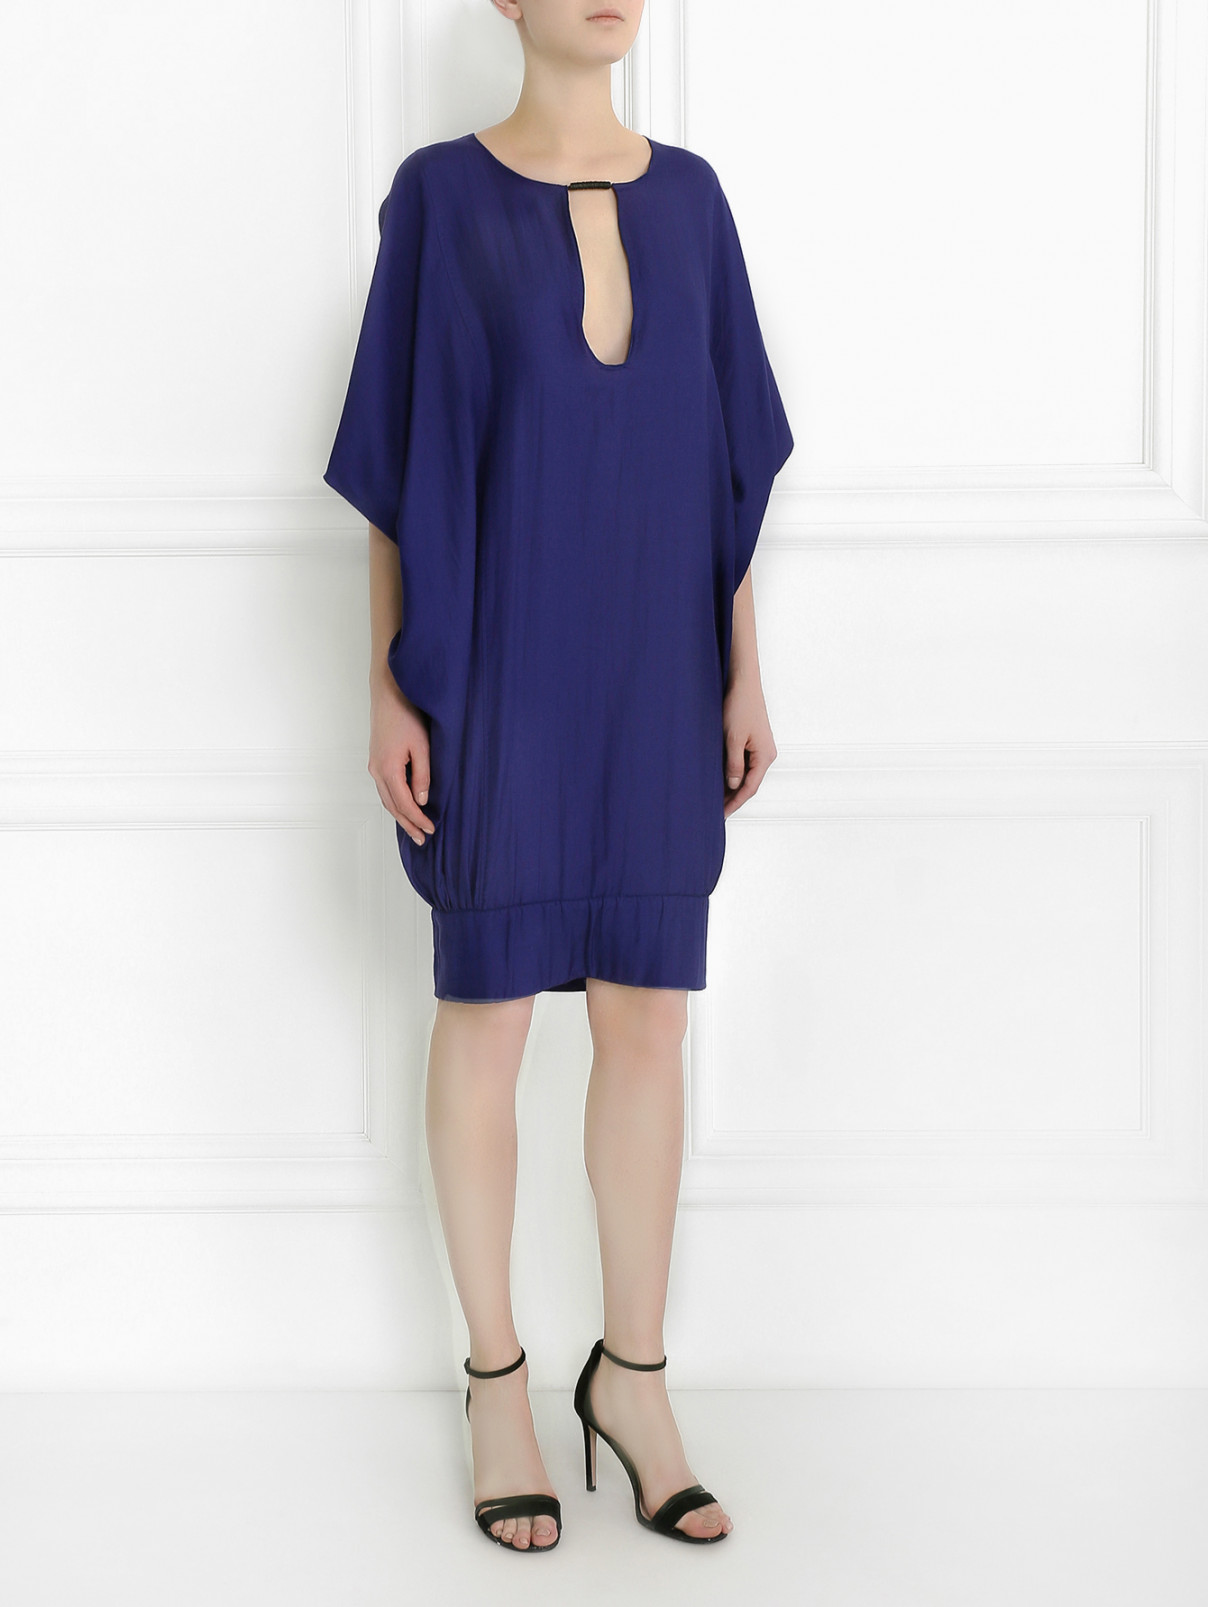 Платье из хлопка и шелка свободного кроя Costume National  –  Модель Общий вид  – Цвет:  Фиолетовый